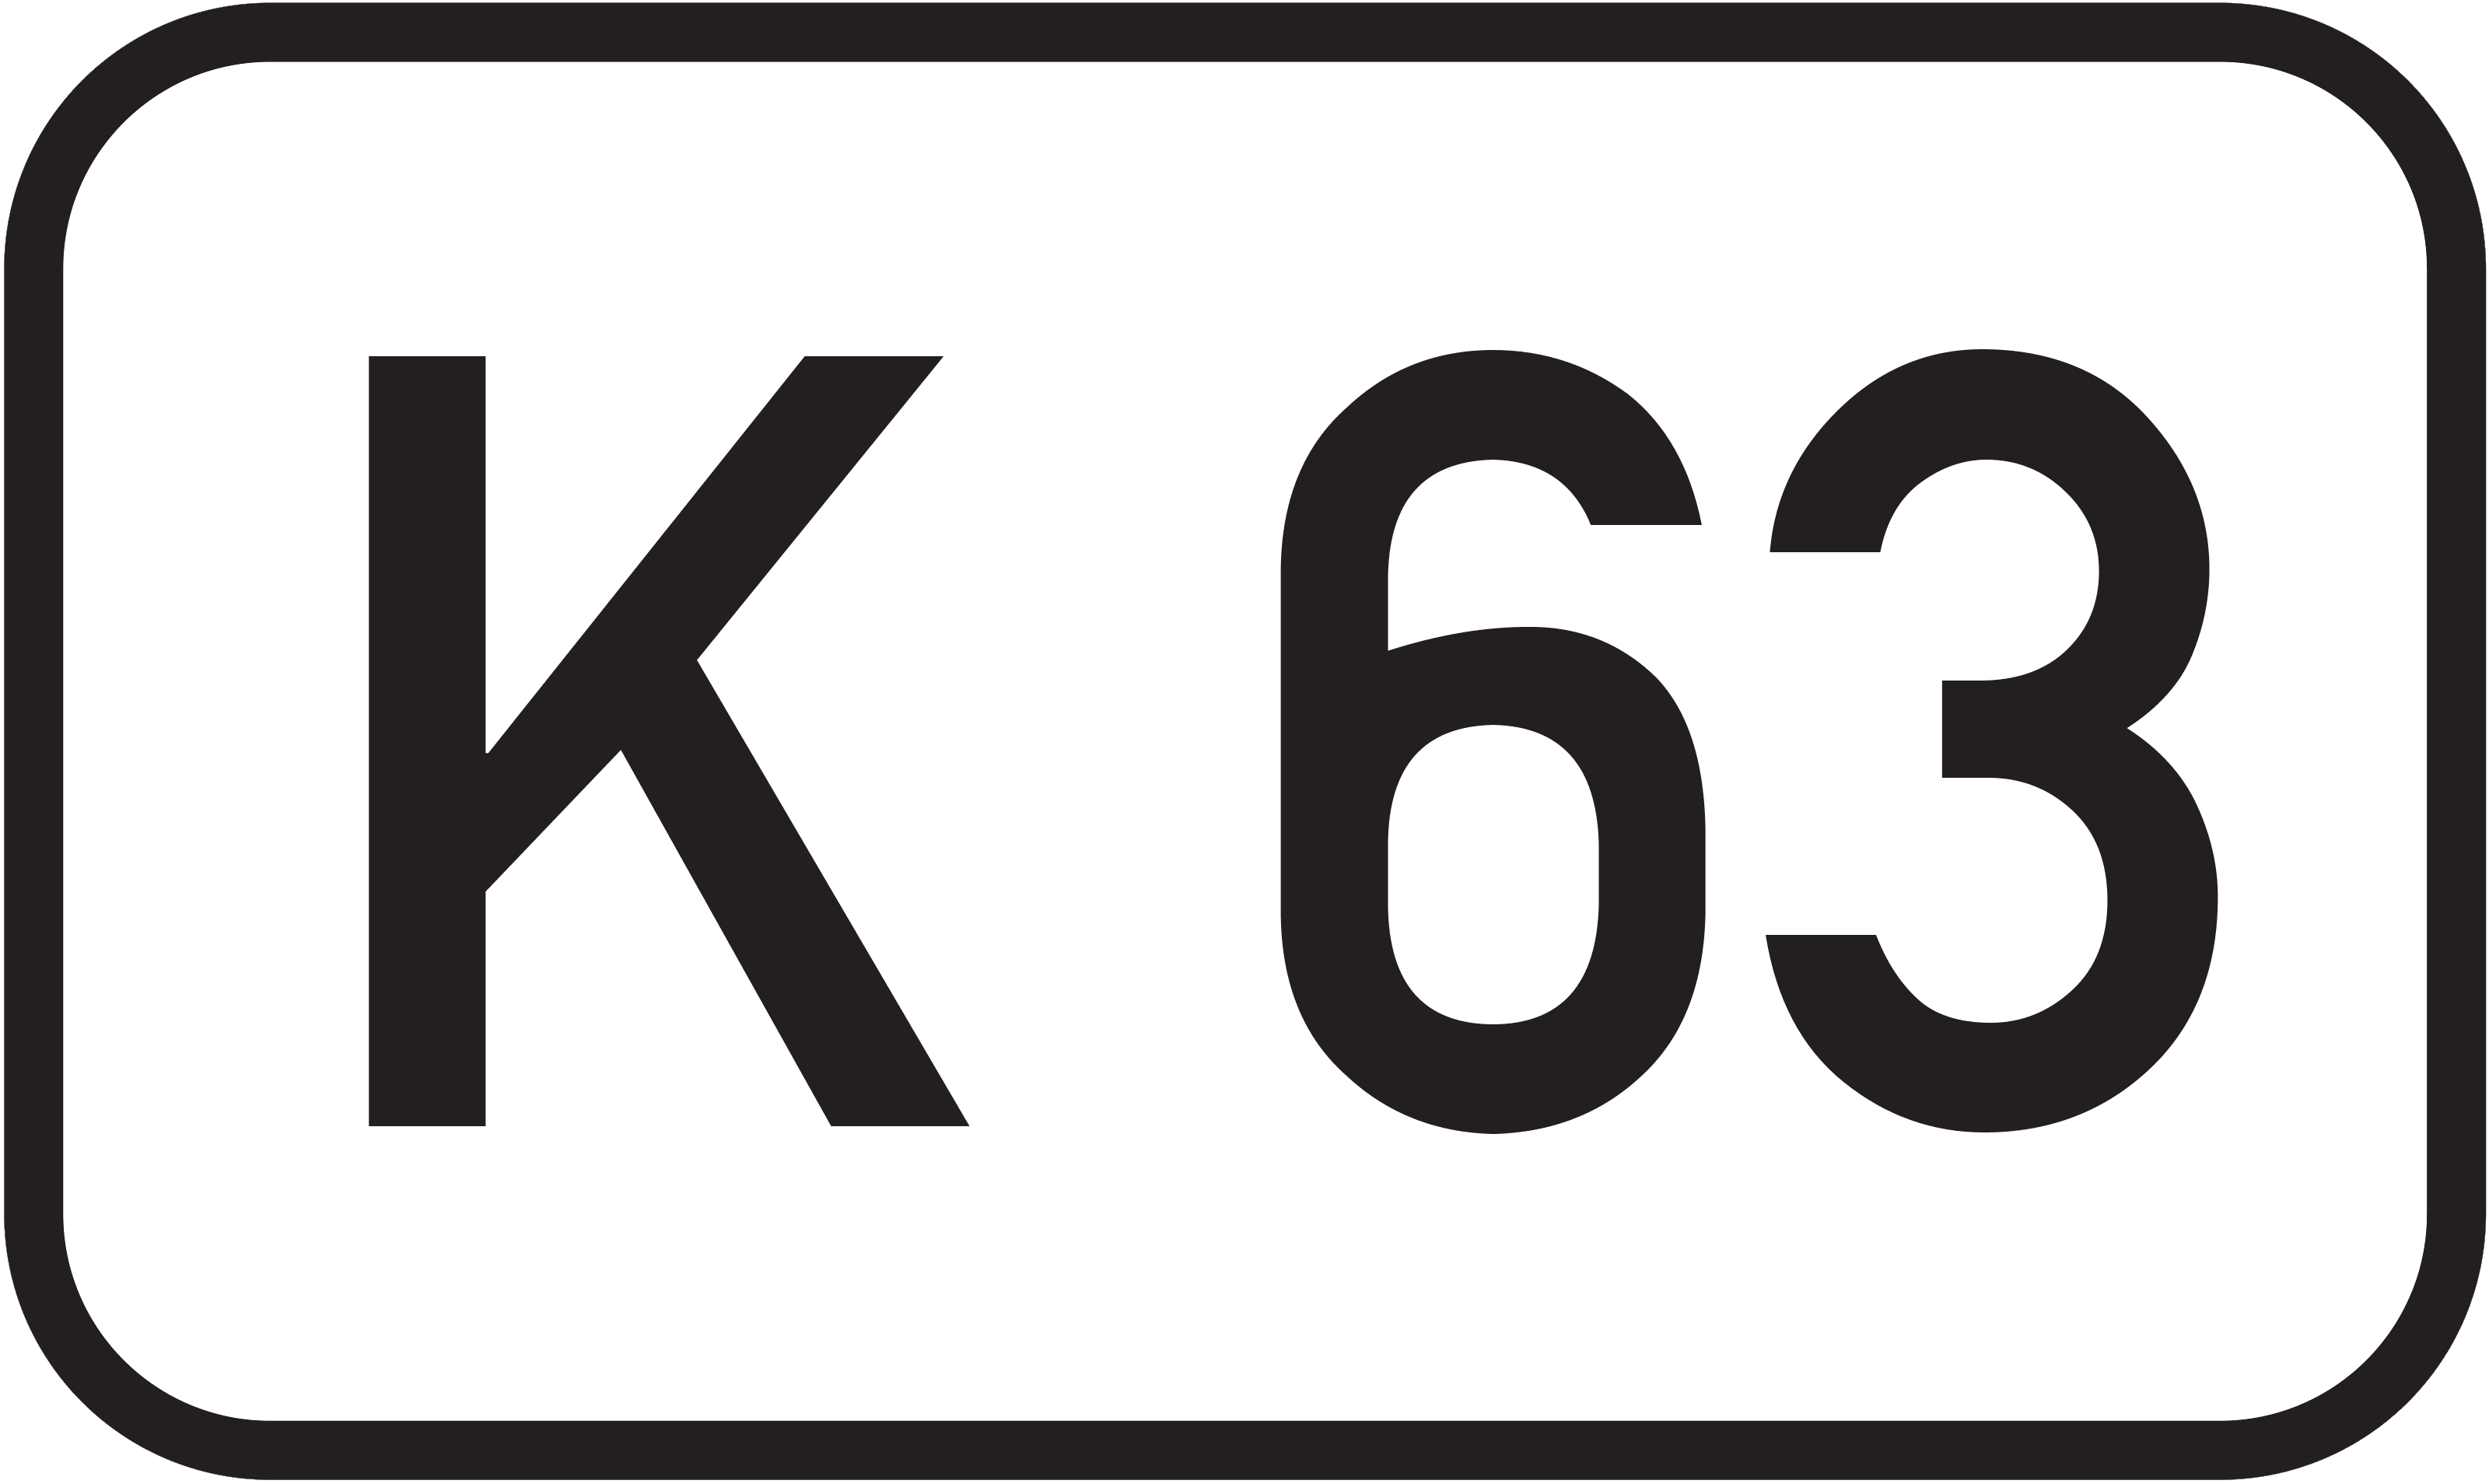 Bundesstraße K 63